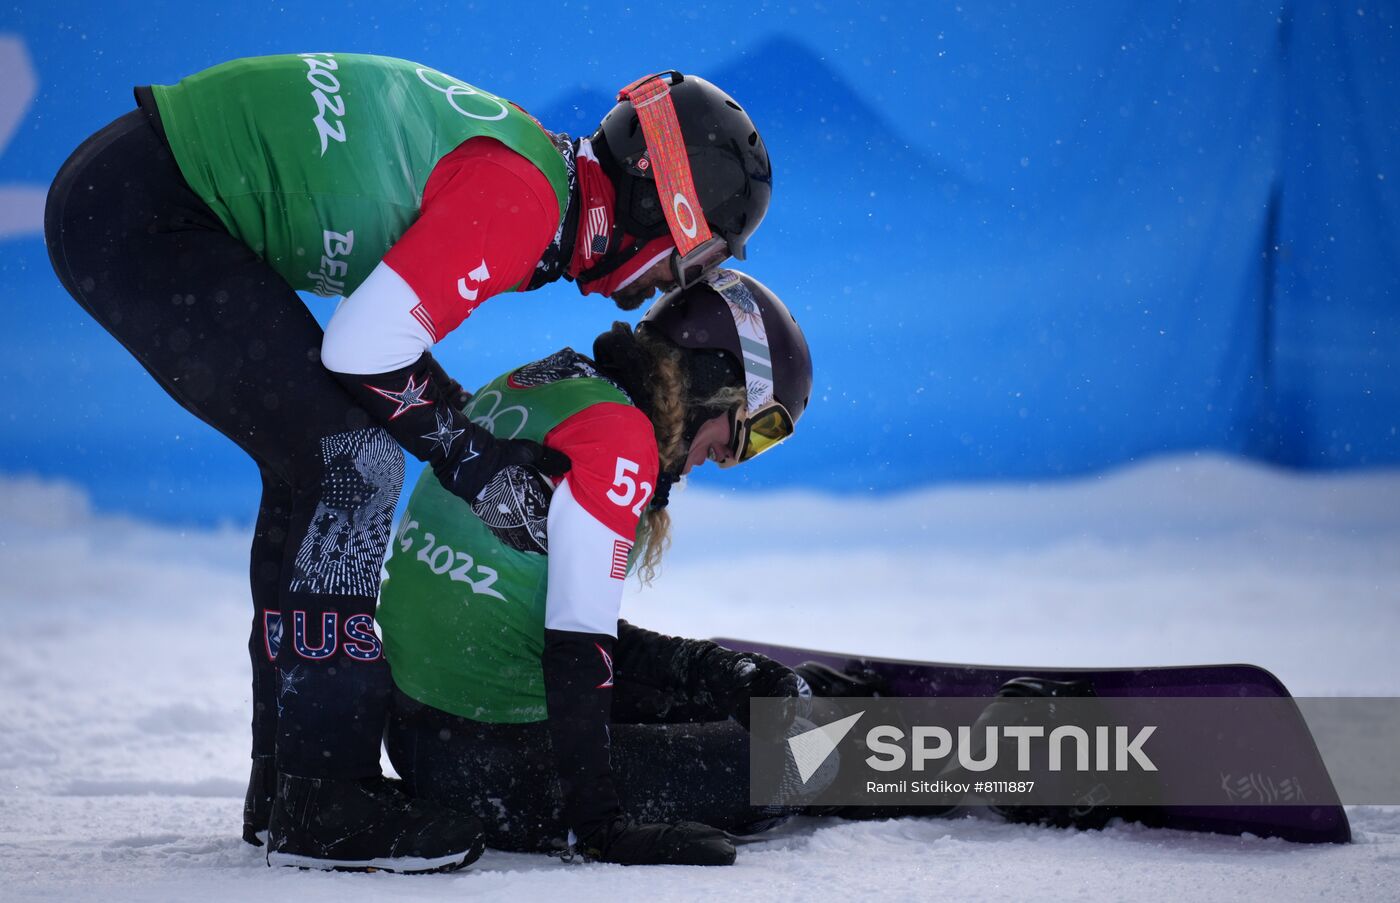 China Olympics 2022 Snowboard Mixed Team